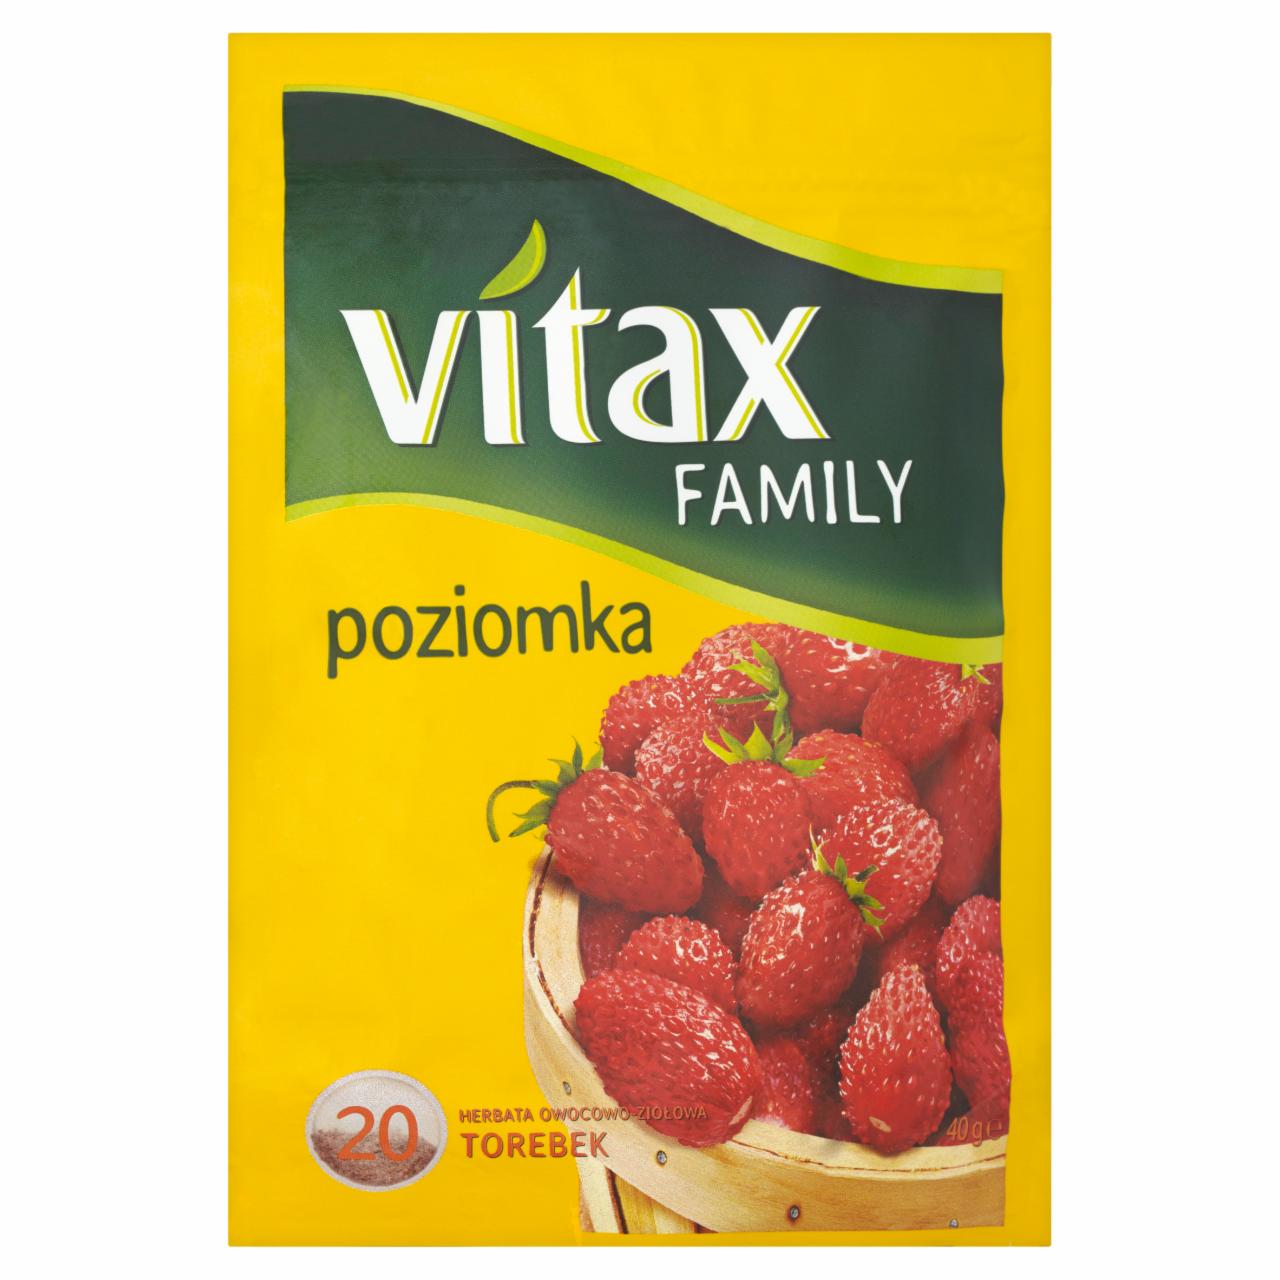 Zdjęcia - Vitax Family poziomka Herbata owocowo-ziołowa 40 g (20 torebek)